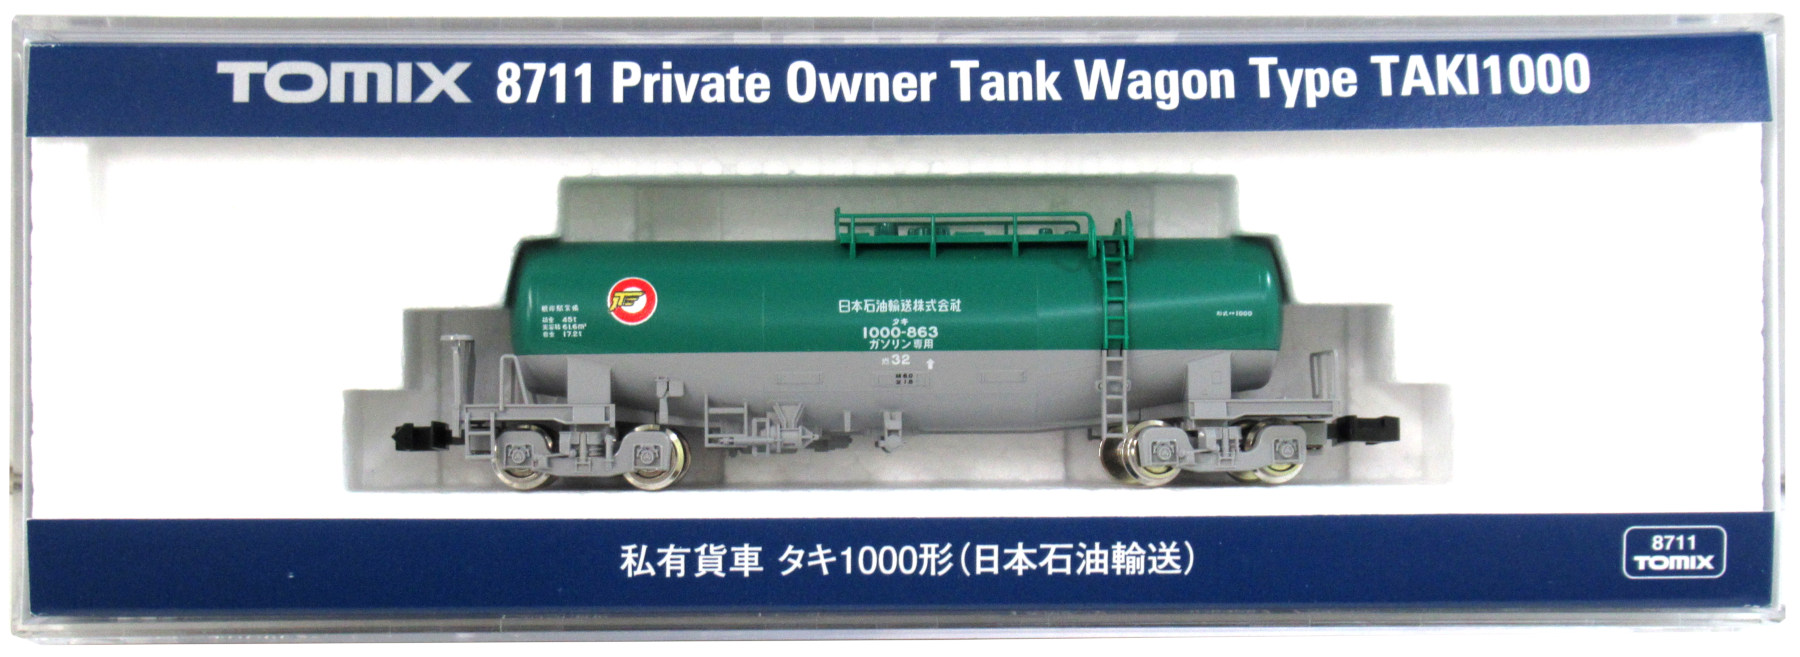 日本正規代理店品 TOMIX Nゲージ DF200 200 2242 鉄道模型 ディーゼル機関車 cb